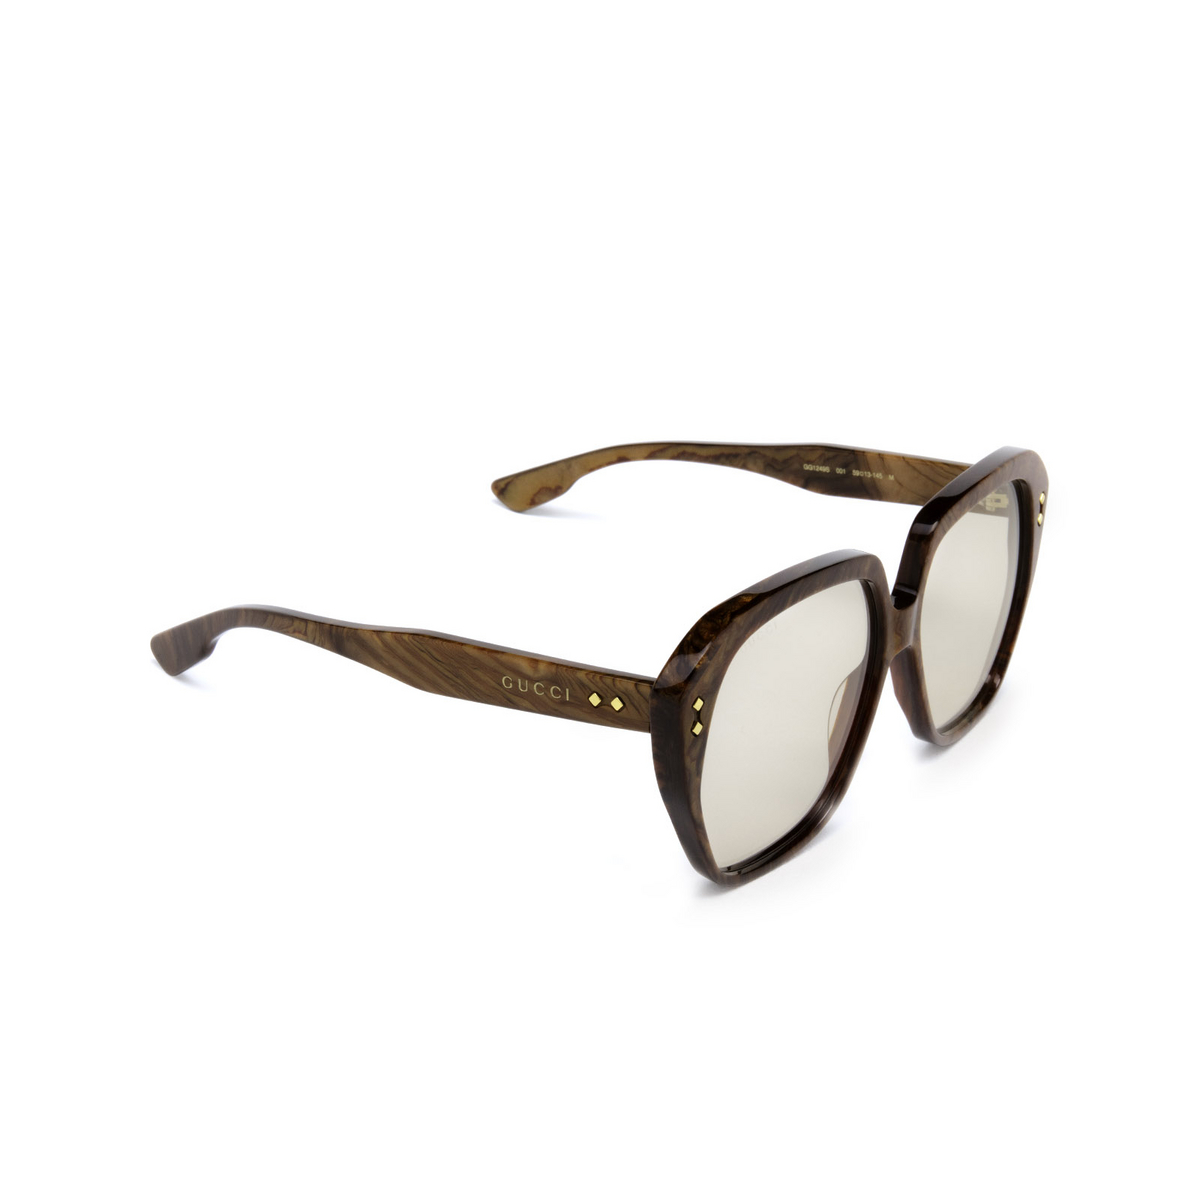 Gucci® Square Sunglasses: GG1249S color Brown 001 - three-quarters view.